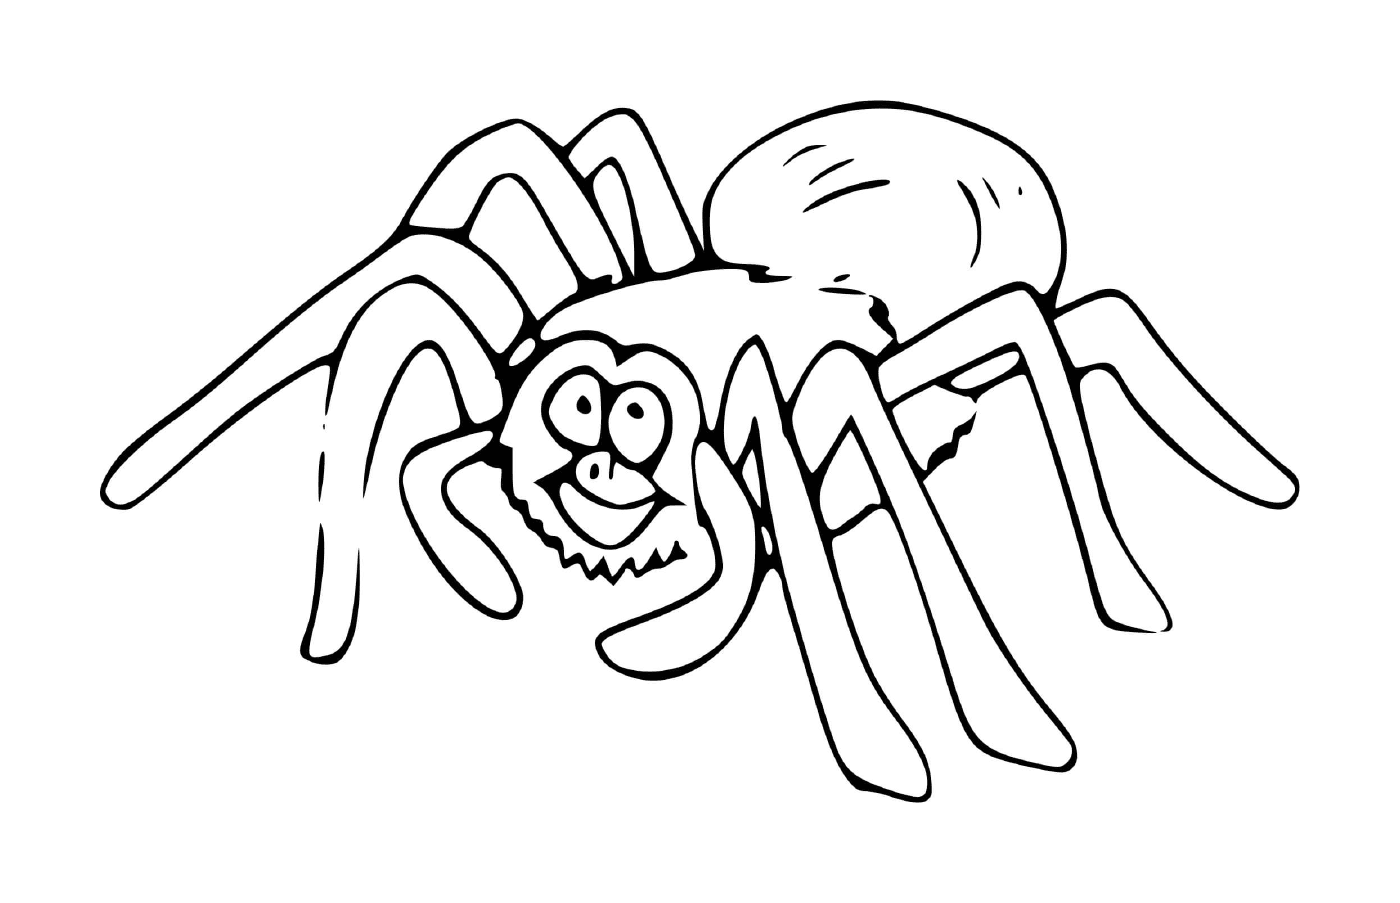  A spider 